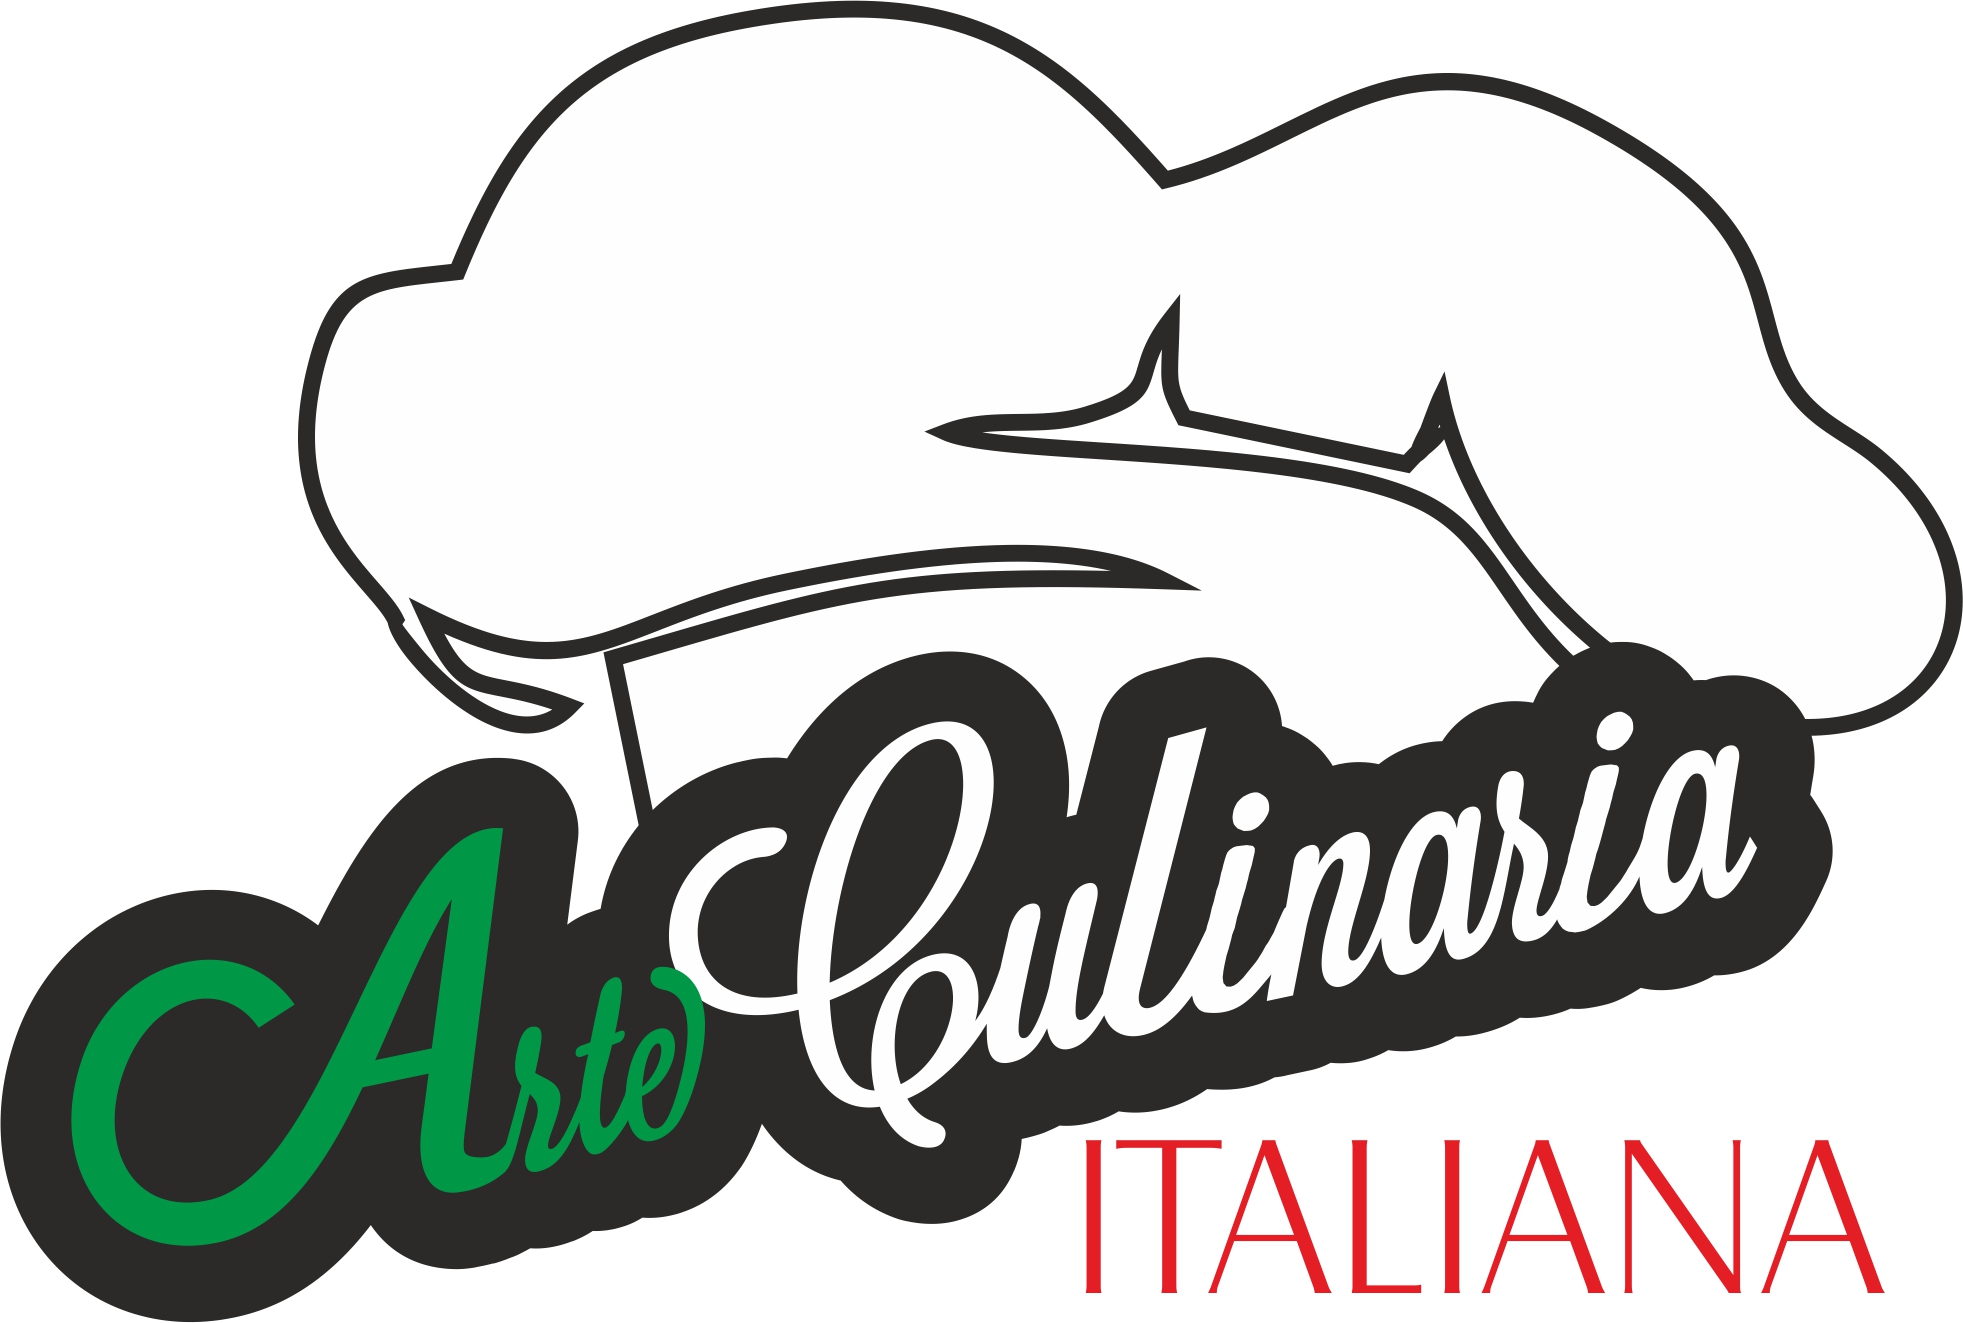 Jubileuszowa edycja Arte Culinaria Italiana już w marcu